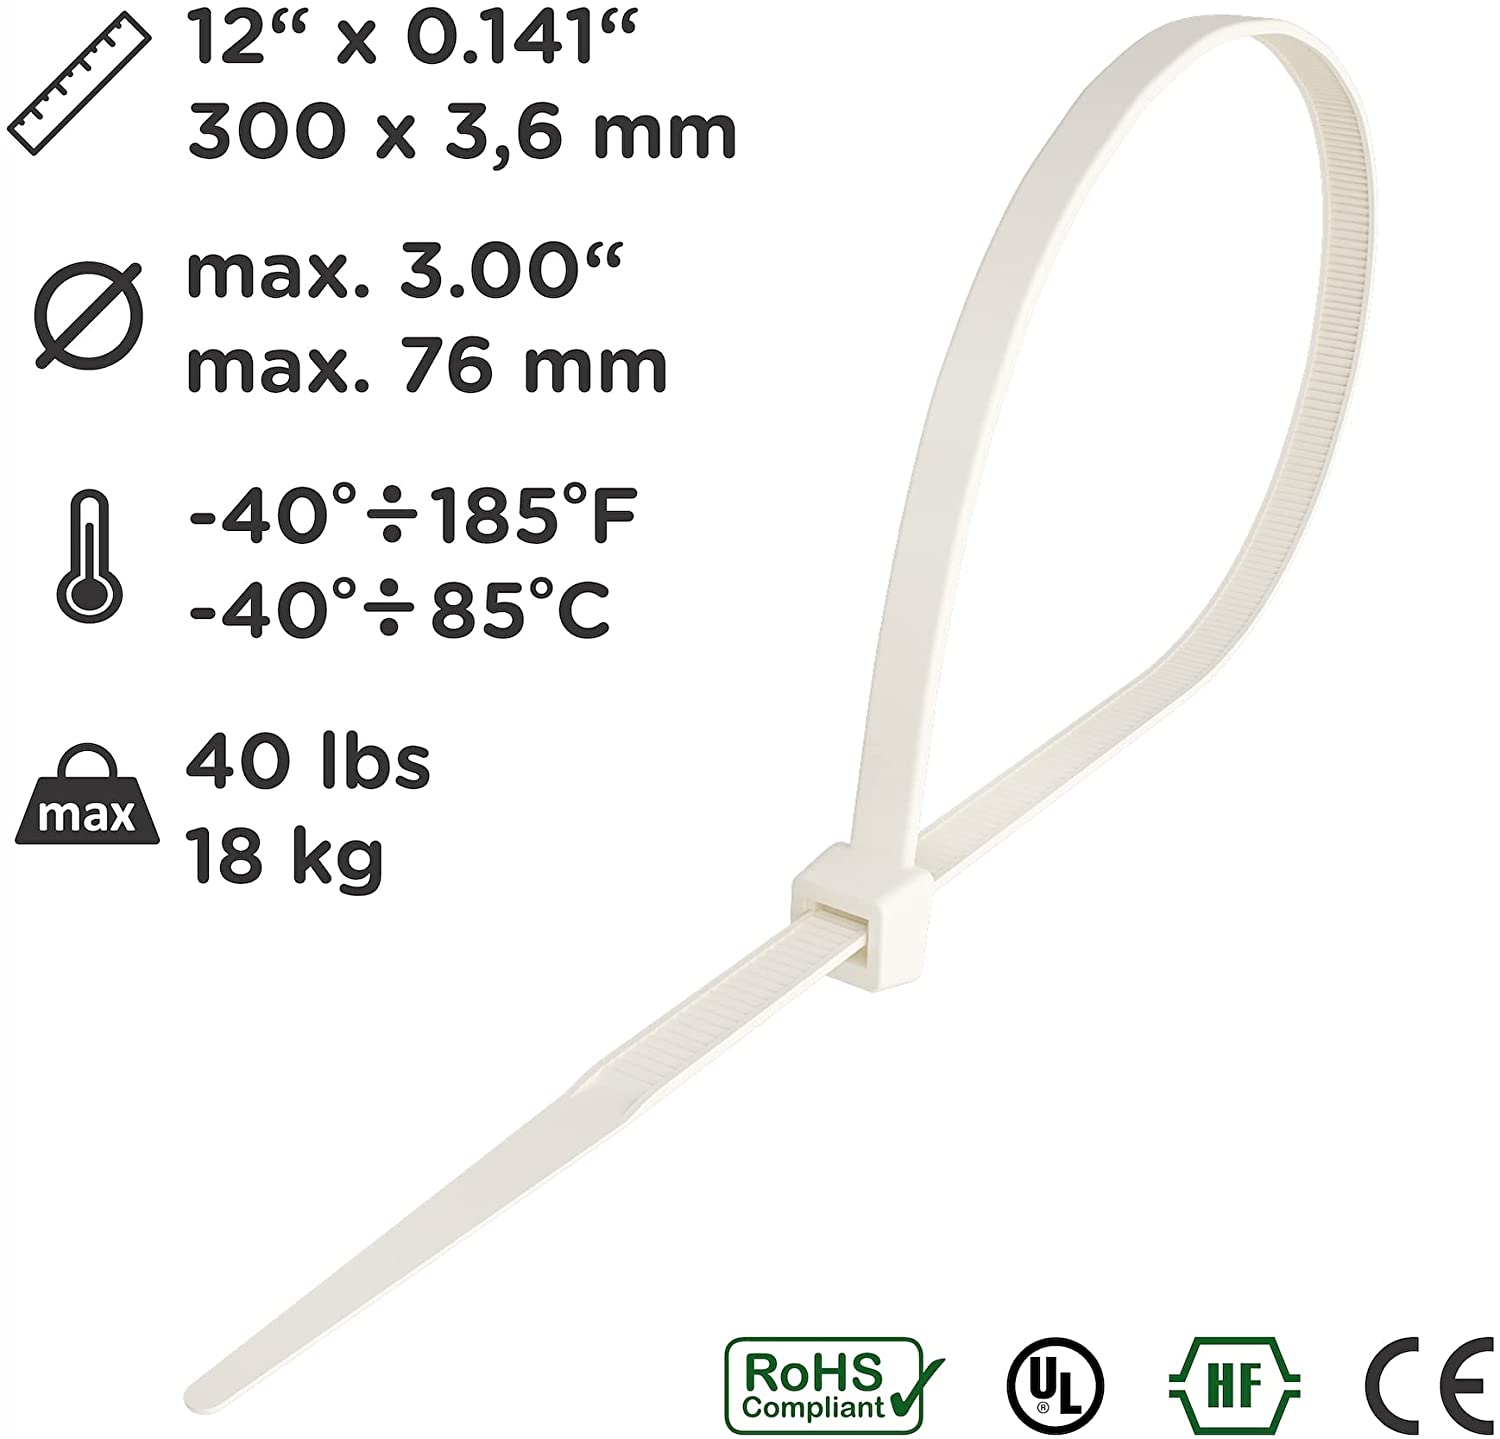 Kabelbinder 300mm x 3,6mm, Nylon, weiß, 100 Stück – intervisio Shop